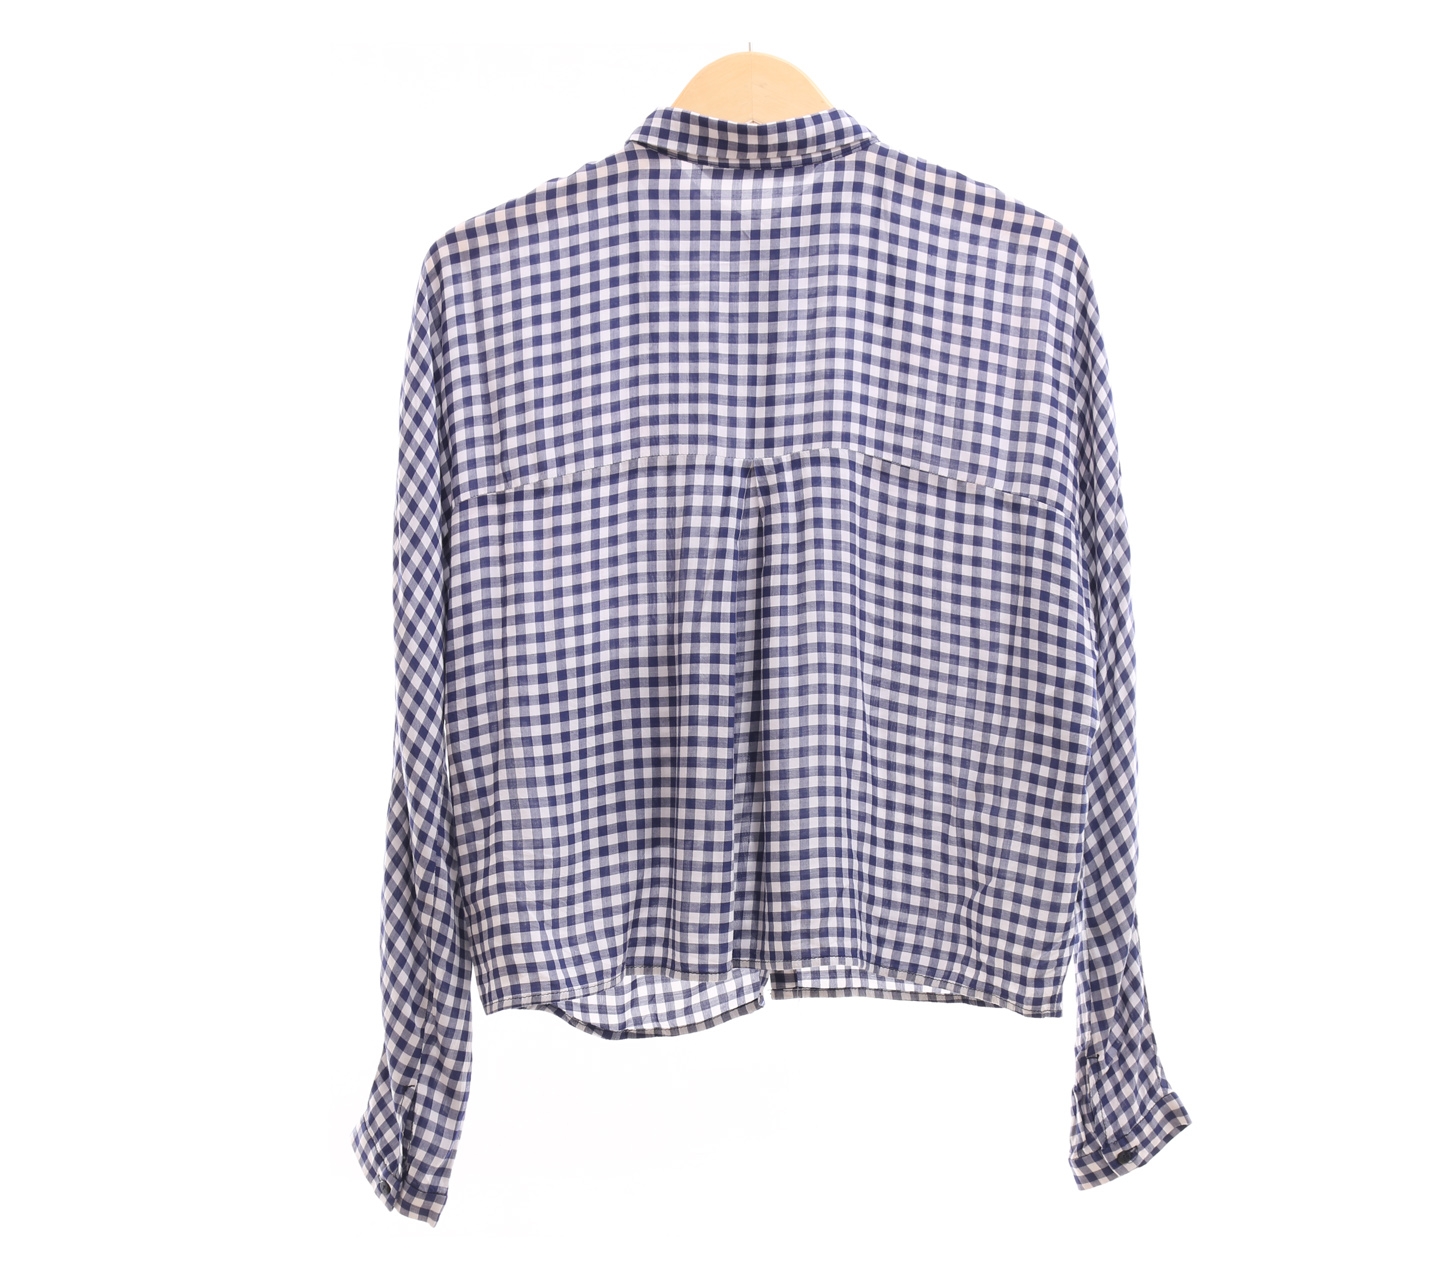 Zara Blue & White Checkered Shirt